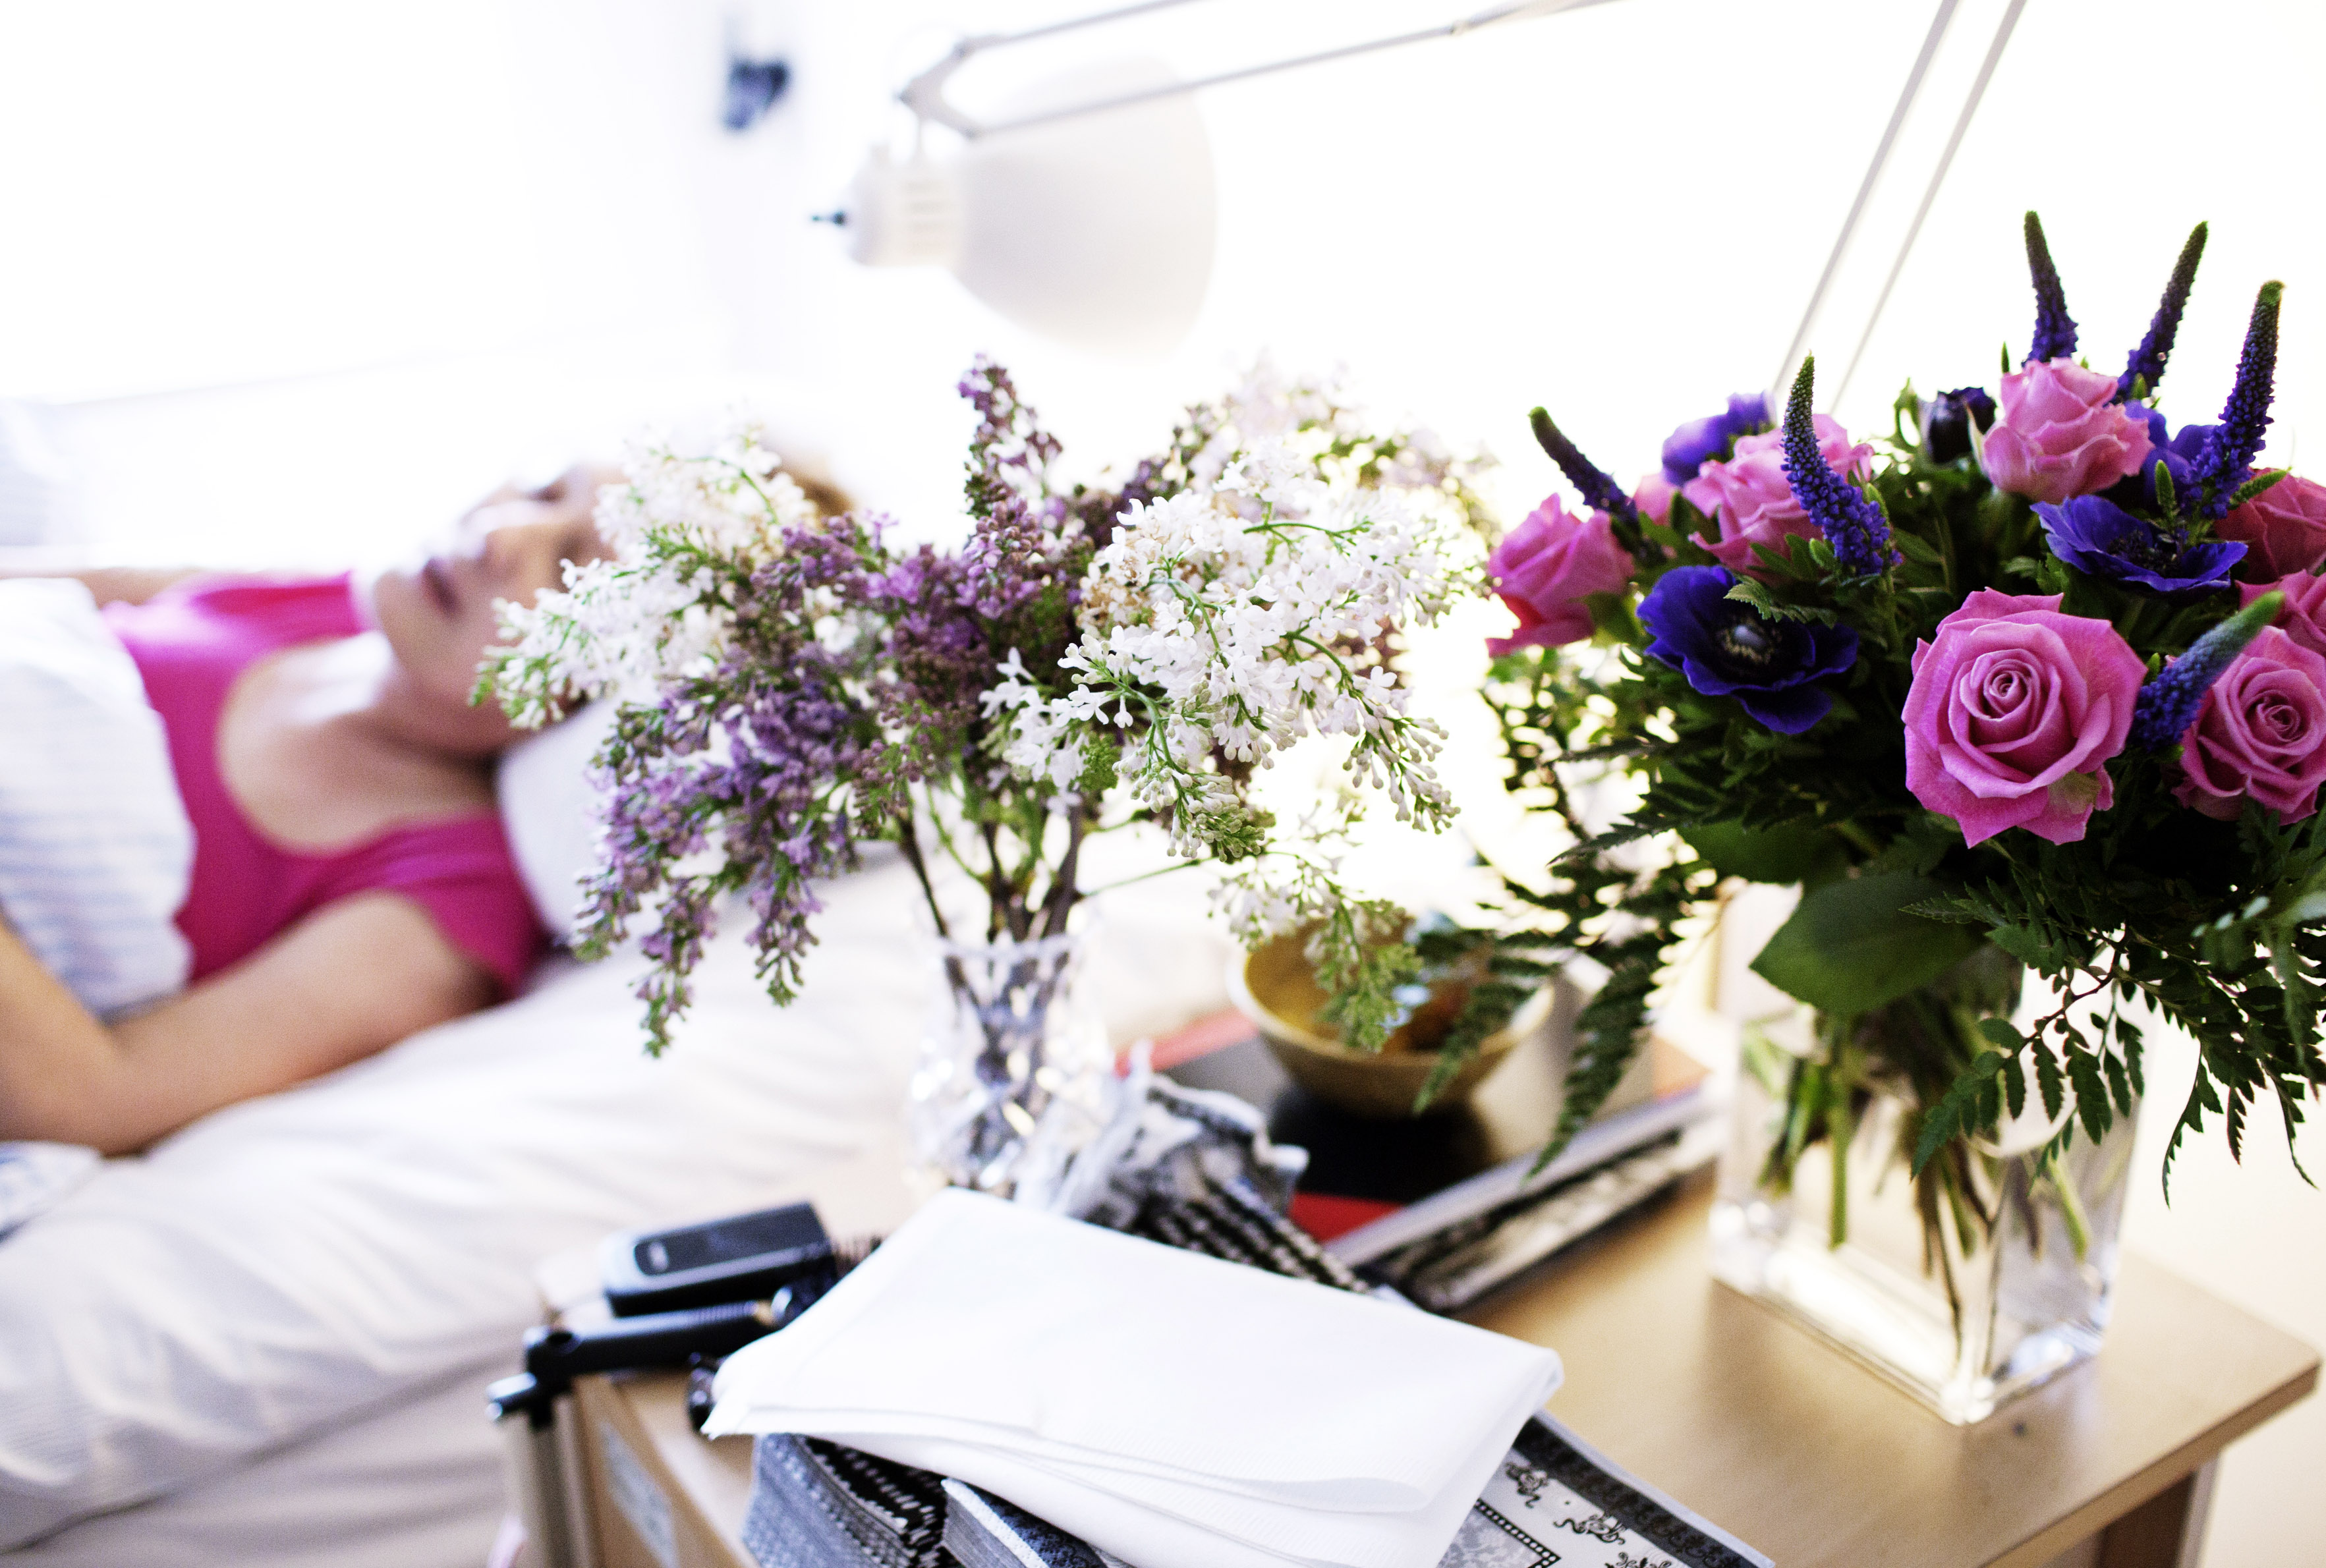 Billedet viser en patient i en seng og blomster i vaser i forgrunden.